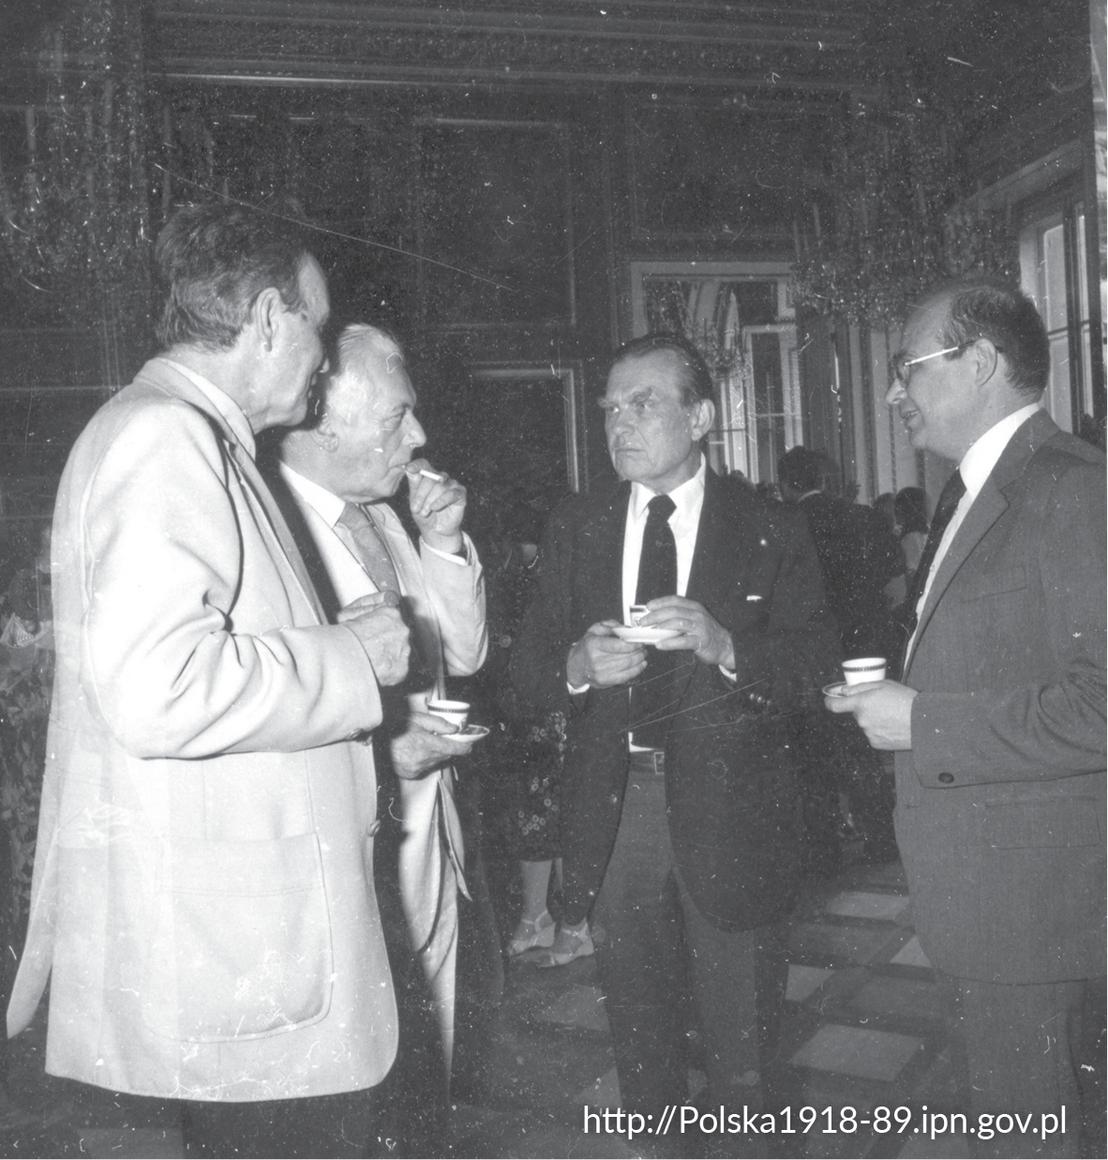  Czesław Miłosz (2P) oraz poeta i tłumacz literatury francuskiej Artur Międzyrzecki (2L) w czasie spotkania w Pałacu na Wyspie w Łazienkach Królewskich